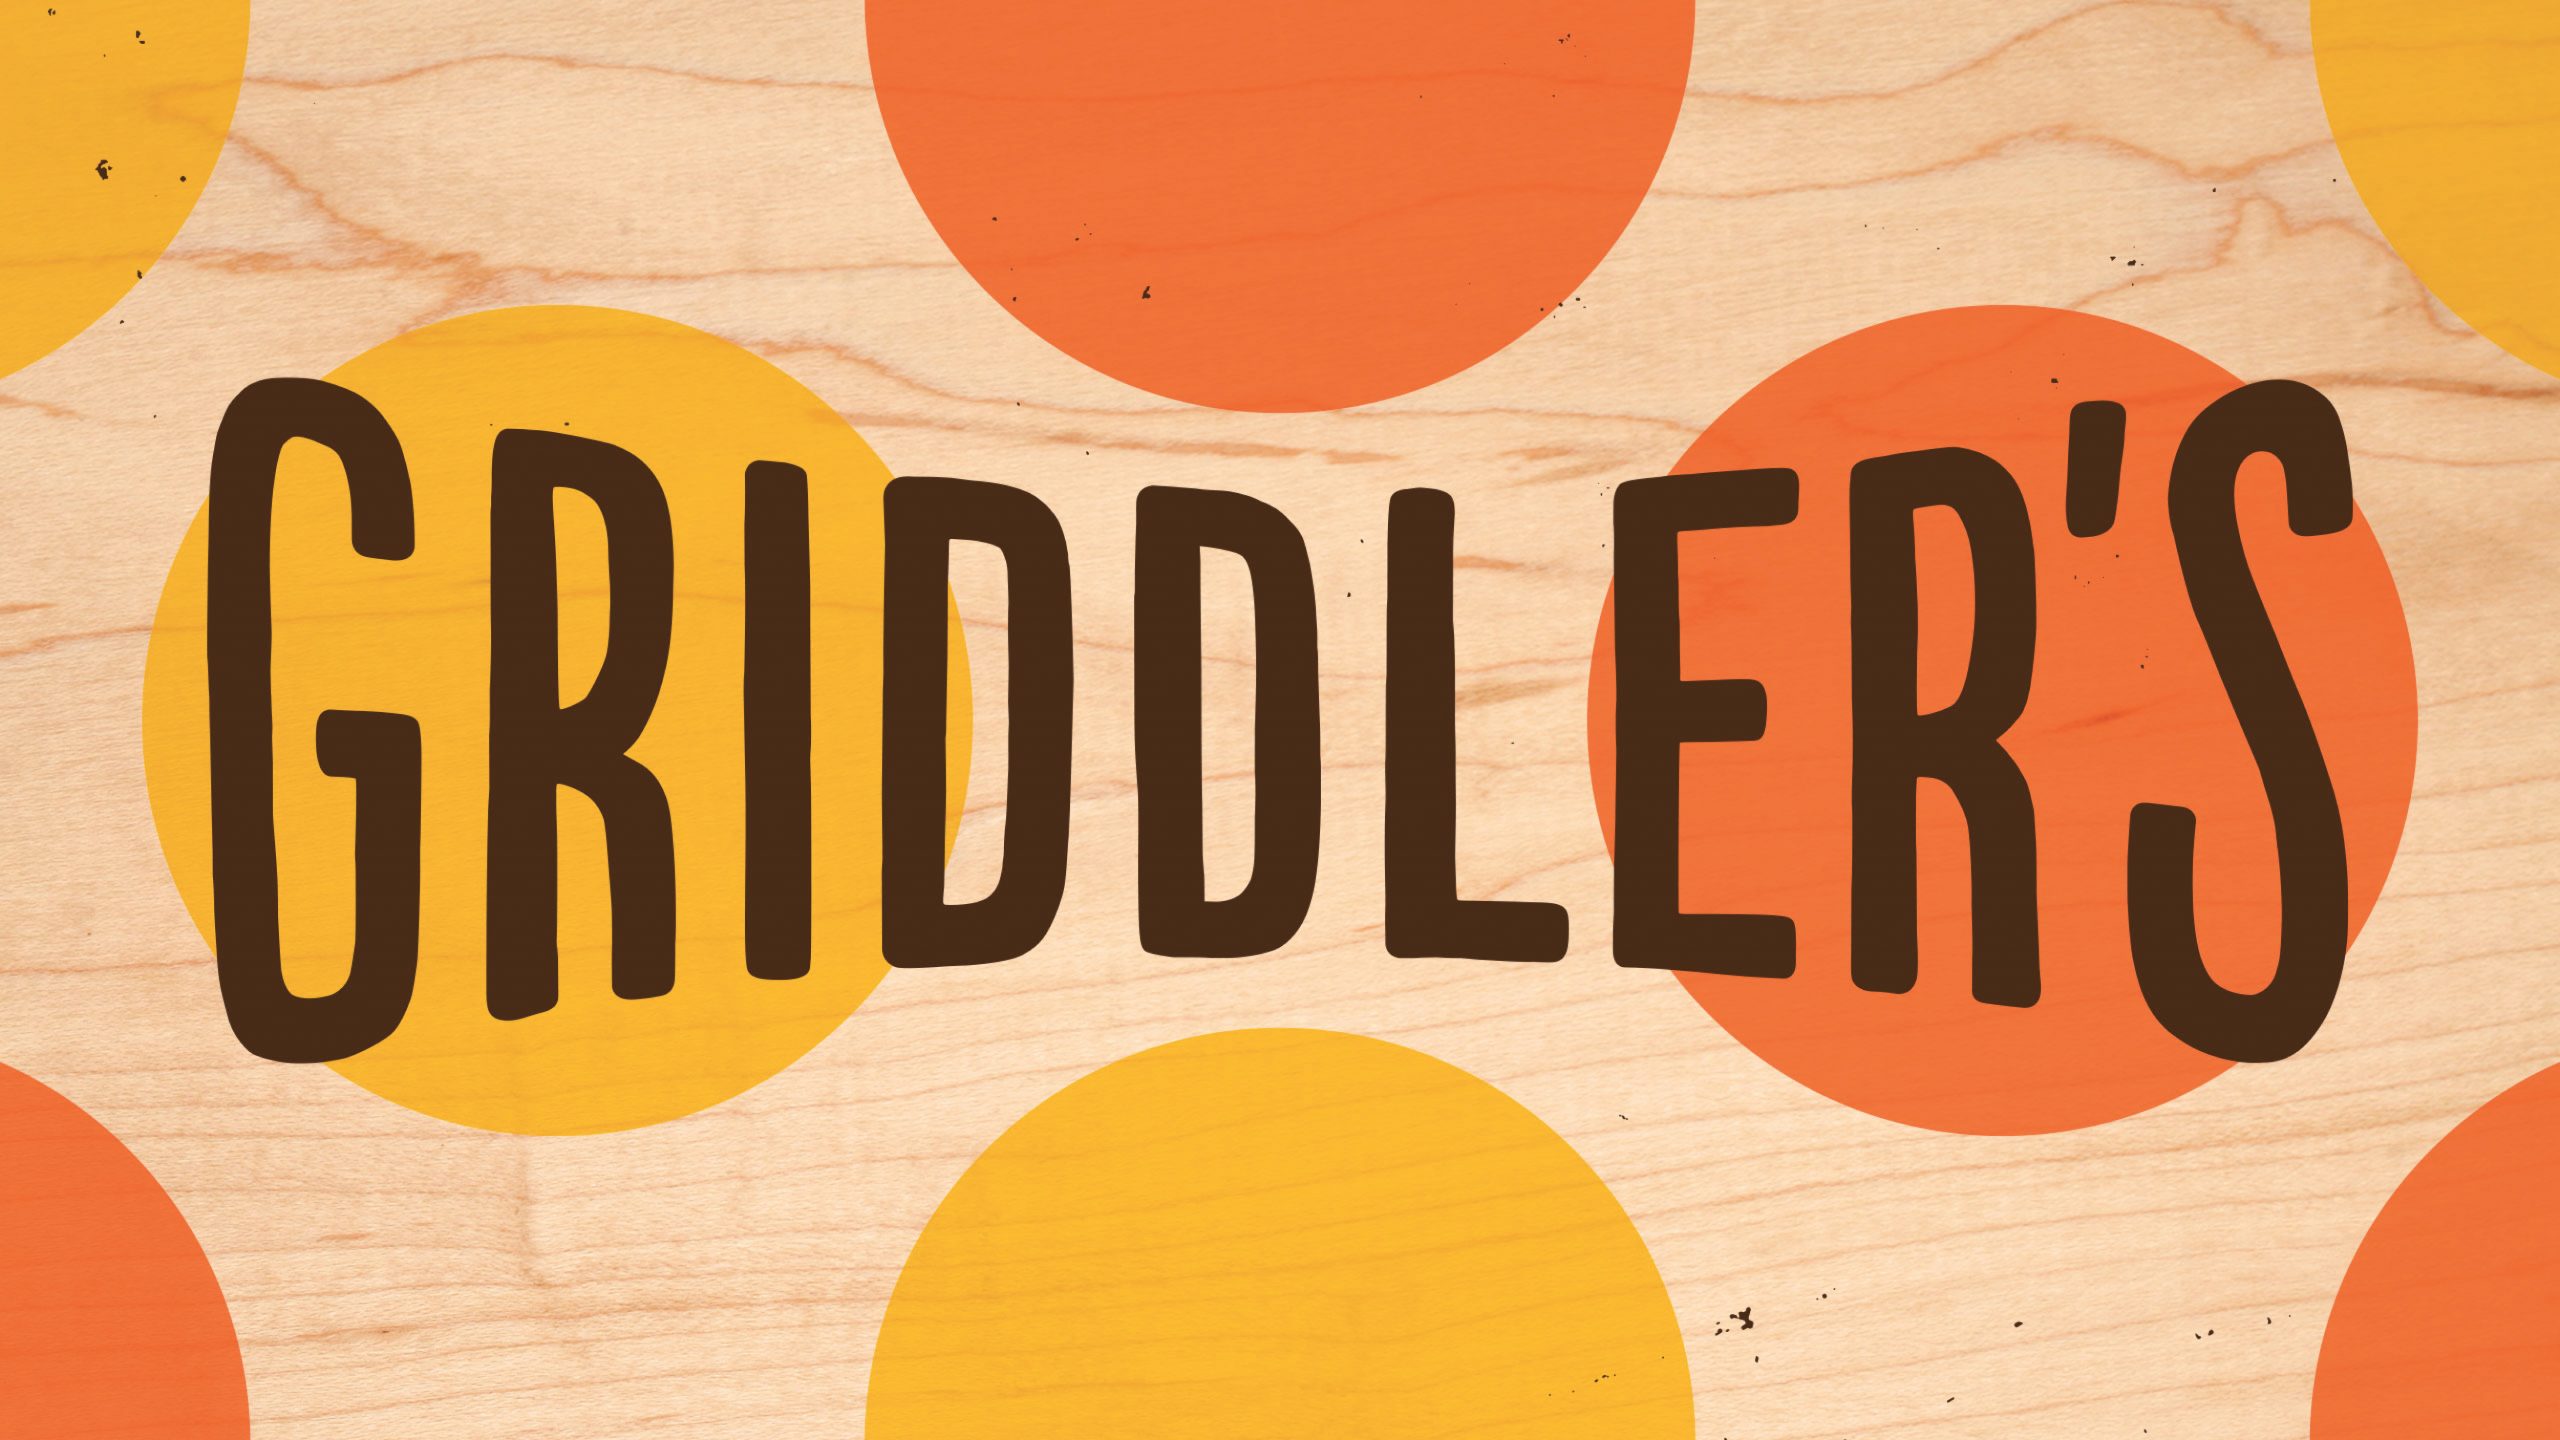 Griddler's logo